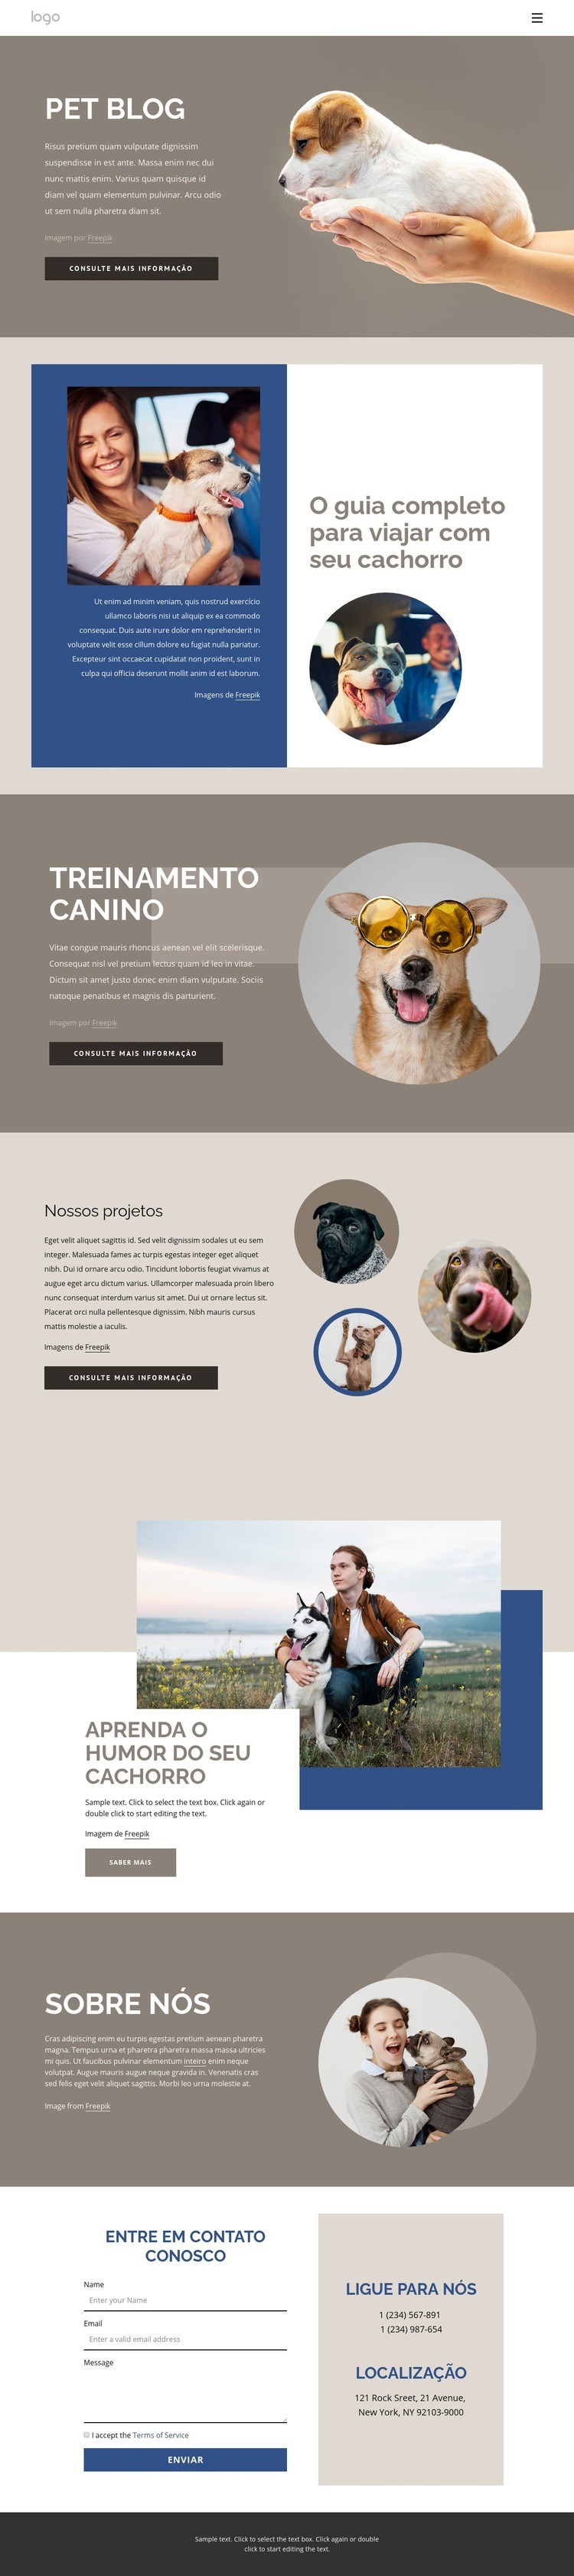 Pet Blog Design do site